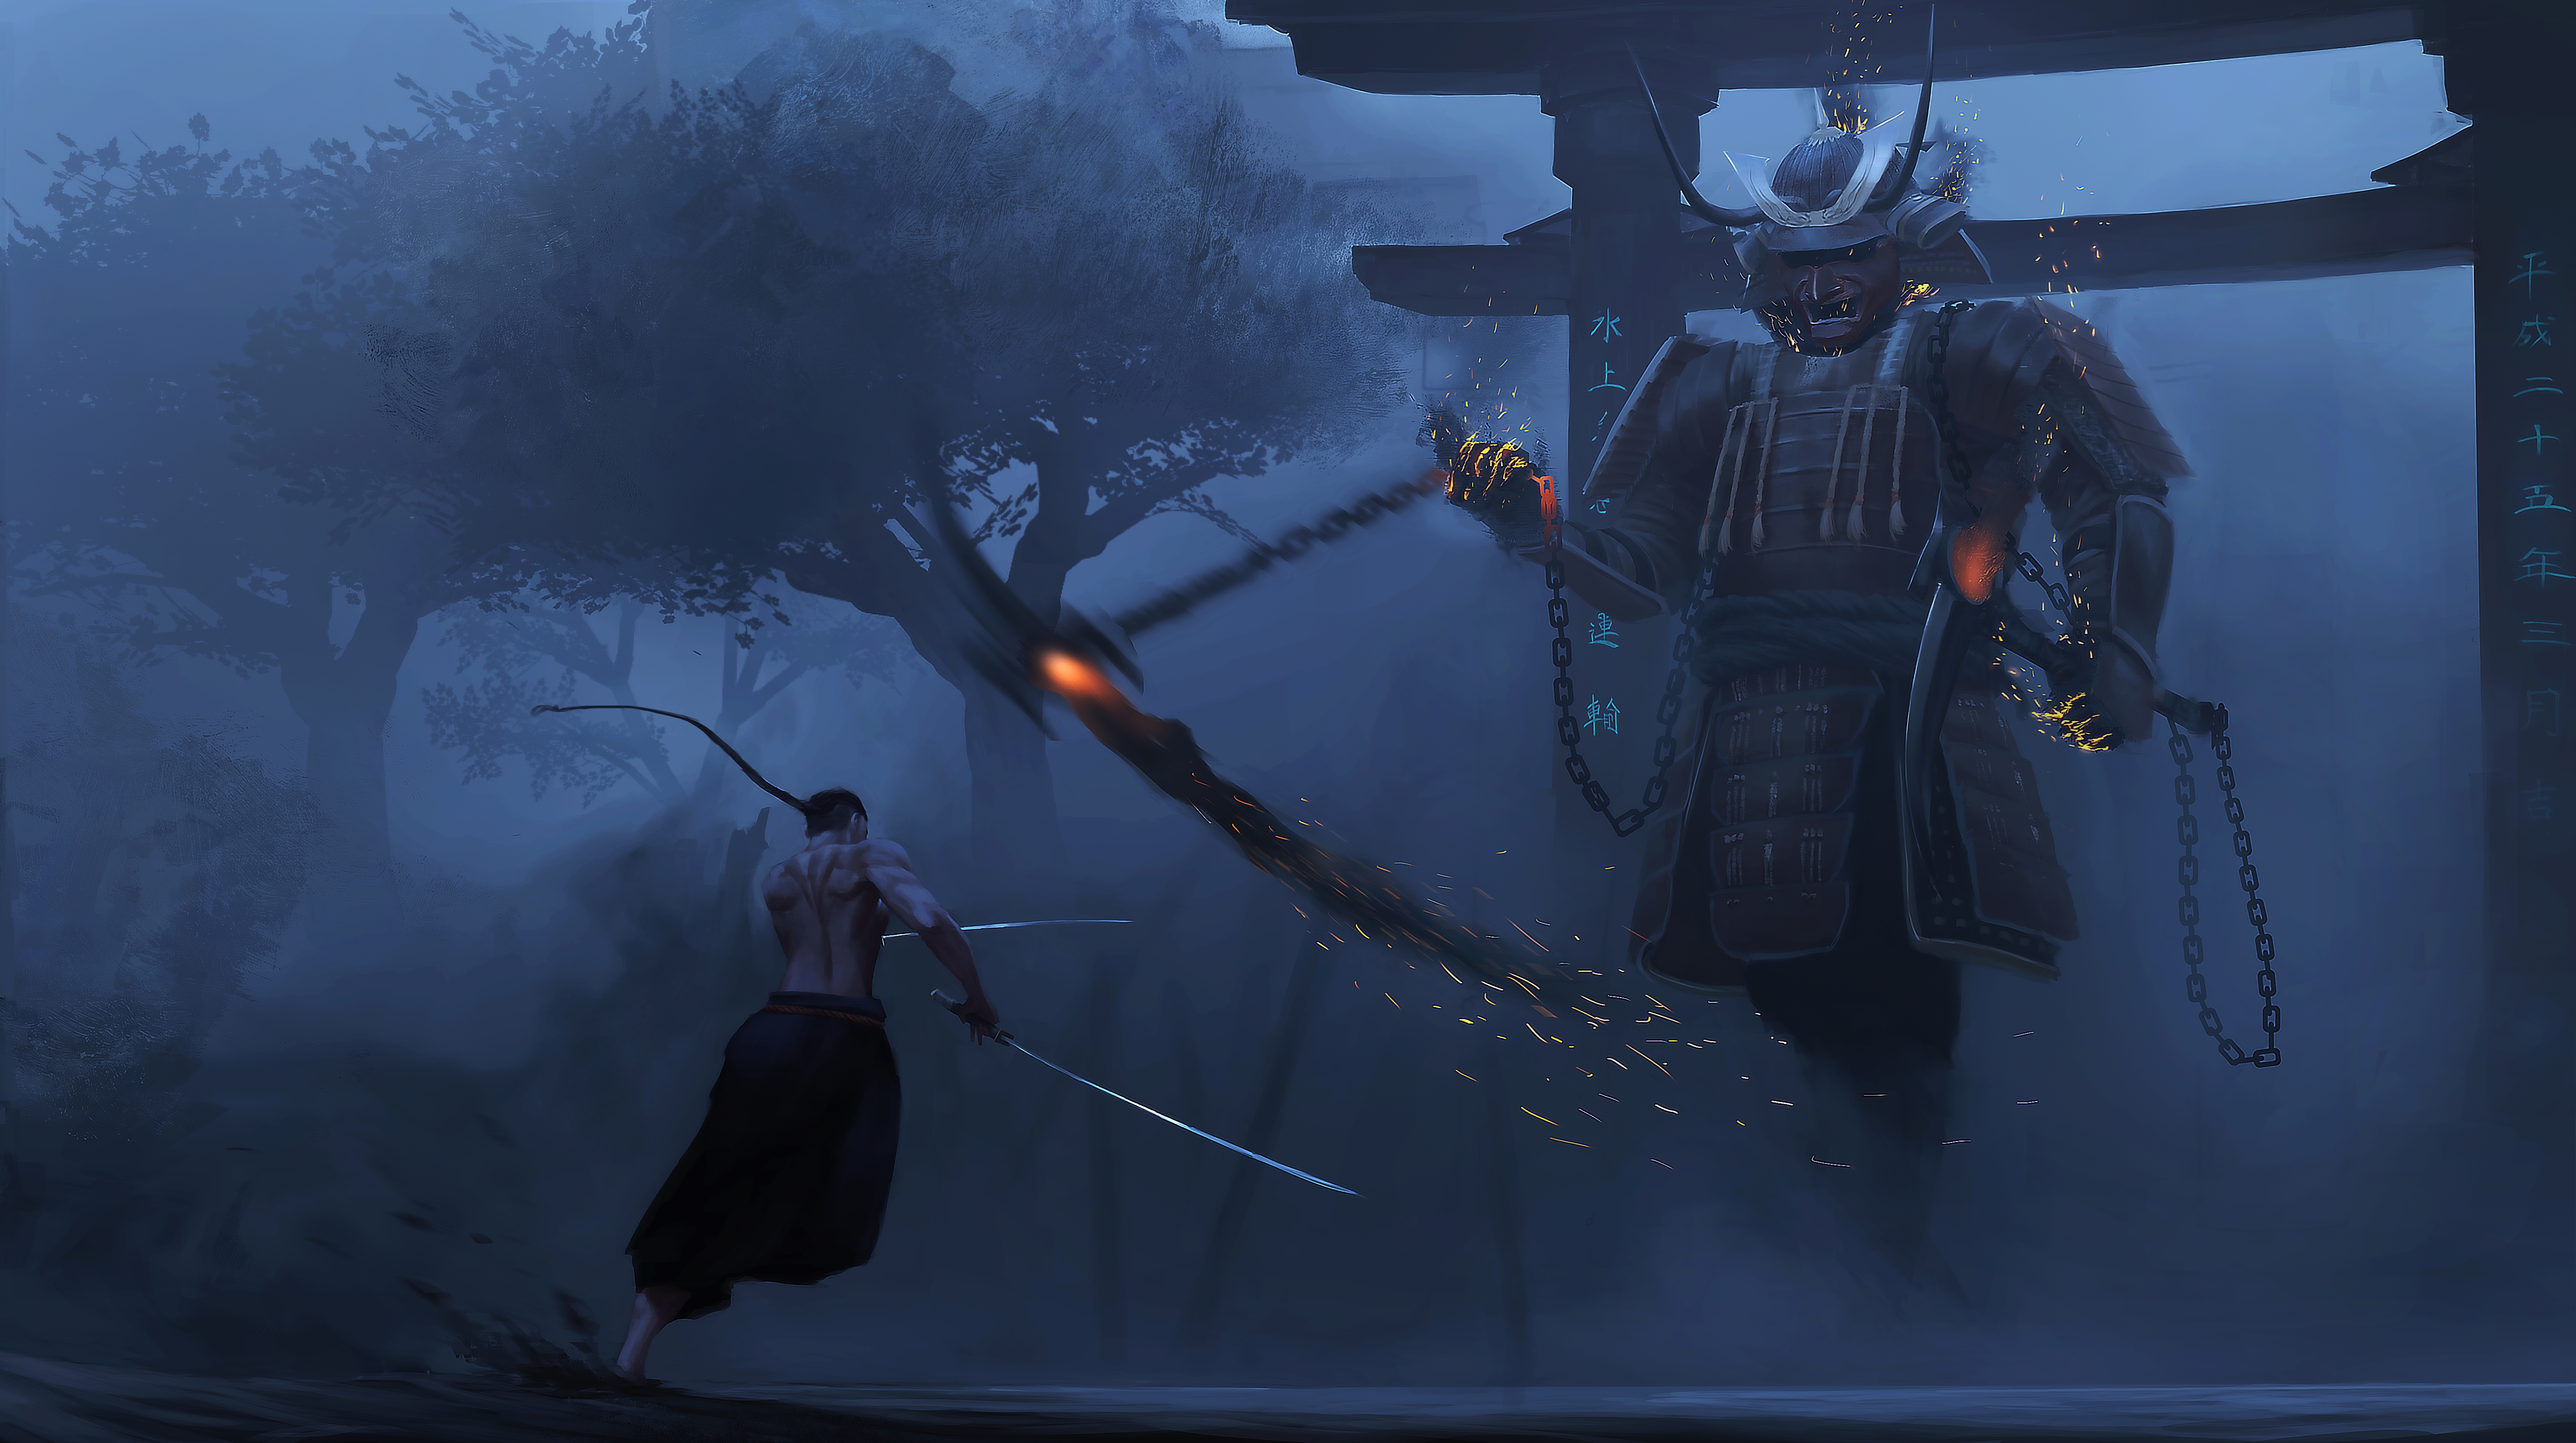 Assault On Samurai by Paul Nong